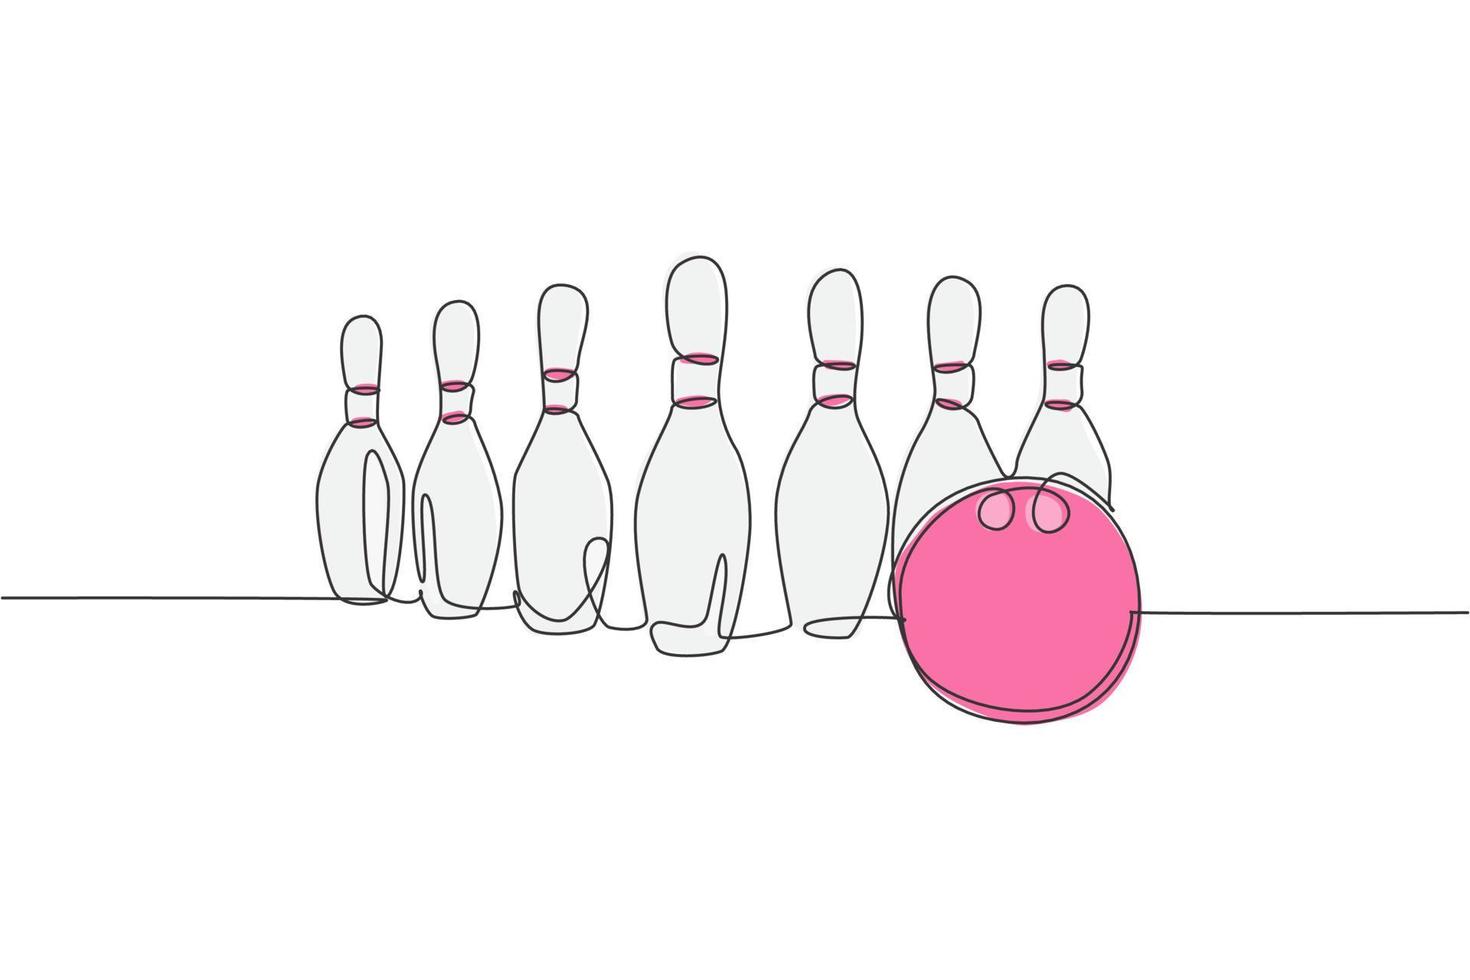 enda kontinuerlig linjeteckning bowlingpinnar uppradade vid bowlingbanan. gör sporthobby på fritidskoncept. trendiga en rad rita design vektorillustration grafik vektor